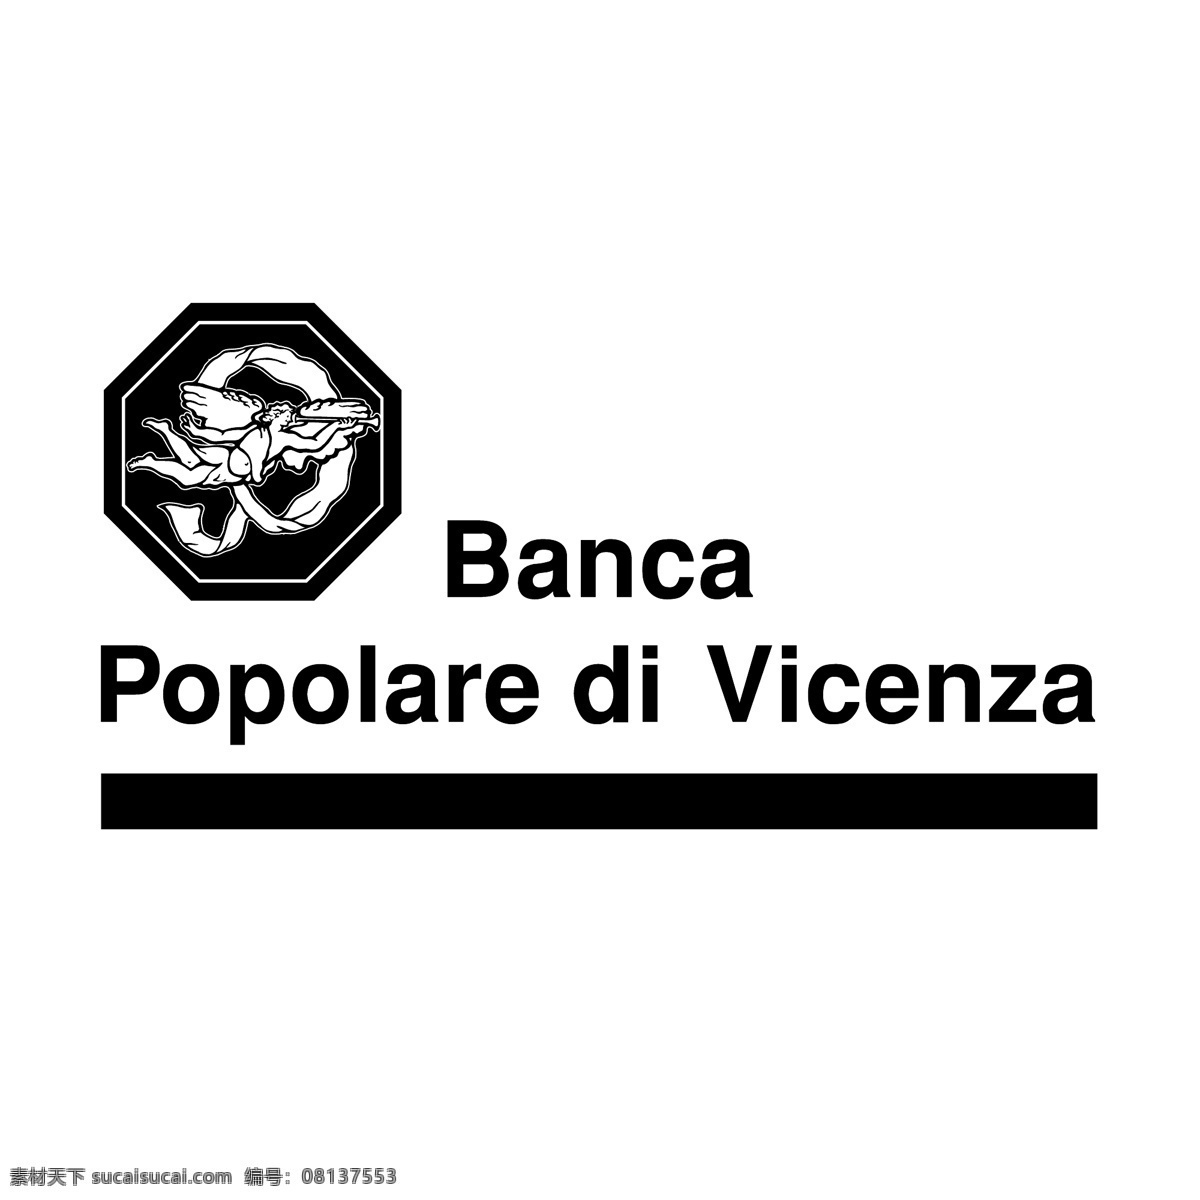 市民维琴察0 银行 banca popolare 受欢迎 维琴察 向量 di罗马 意大利罗马 自由 矢量 图像 二向量 二 建筑家居